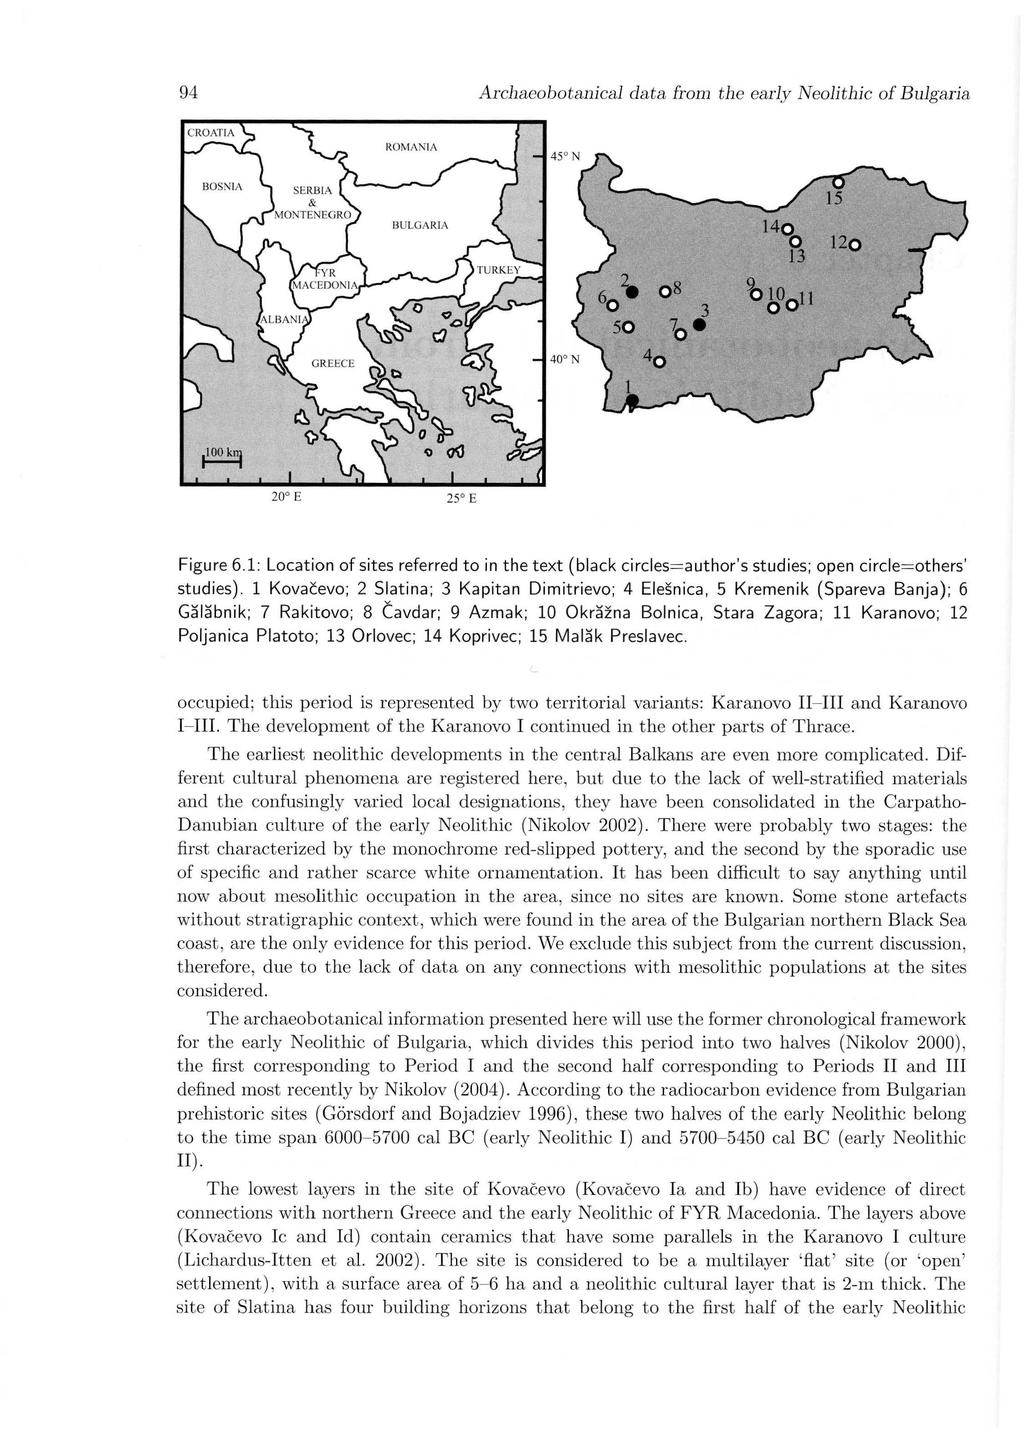 94 Archaeobotanical data from the early Neolithic of Bulgaria ROMA NIA 140 B 120 e,0011 20 E 25 E Figure 6.